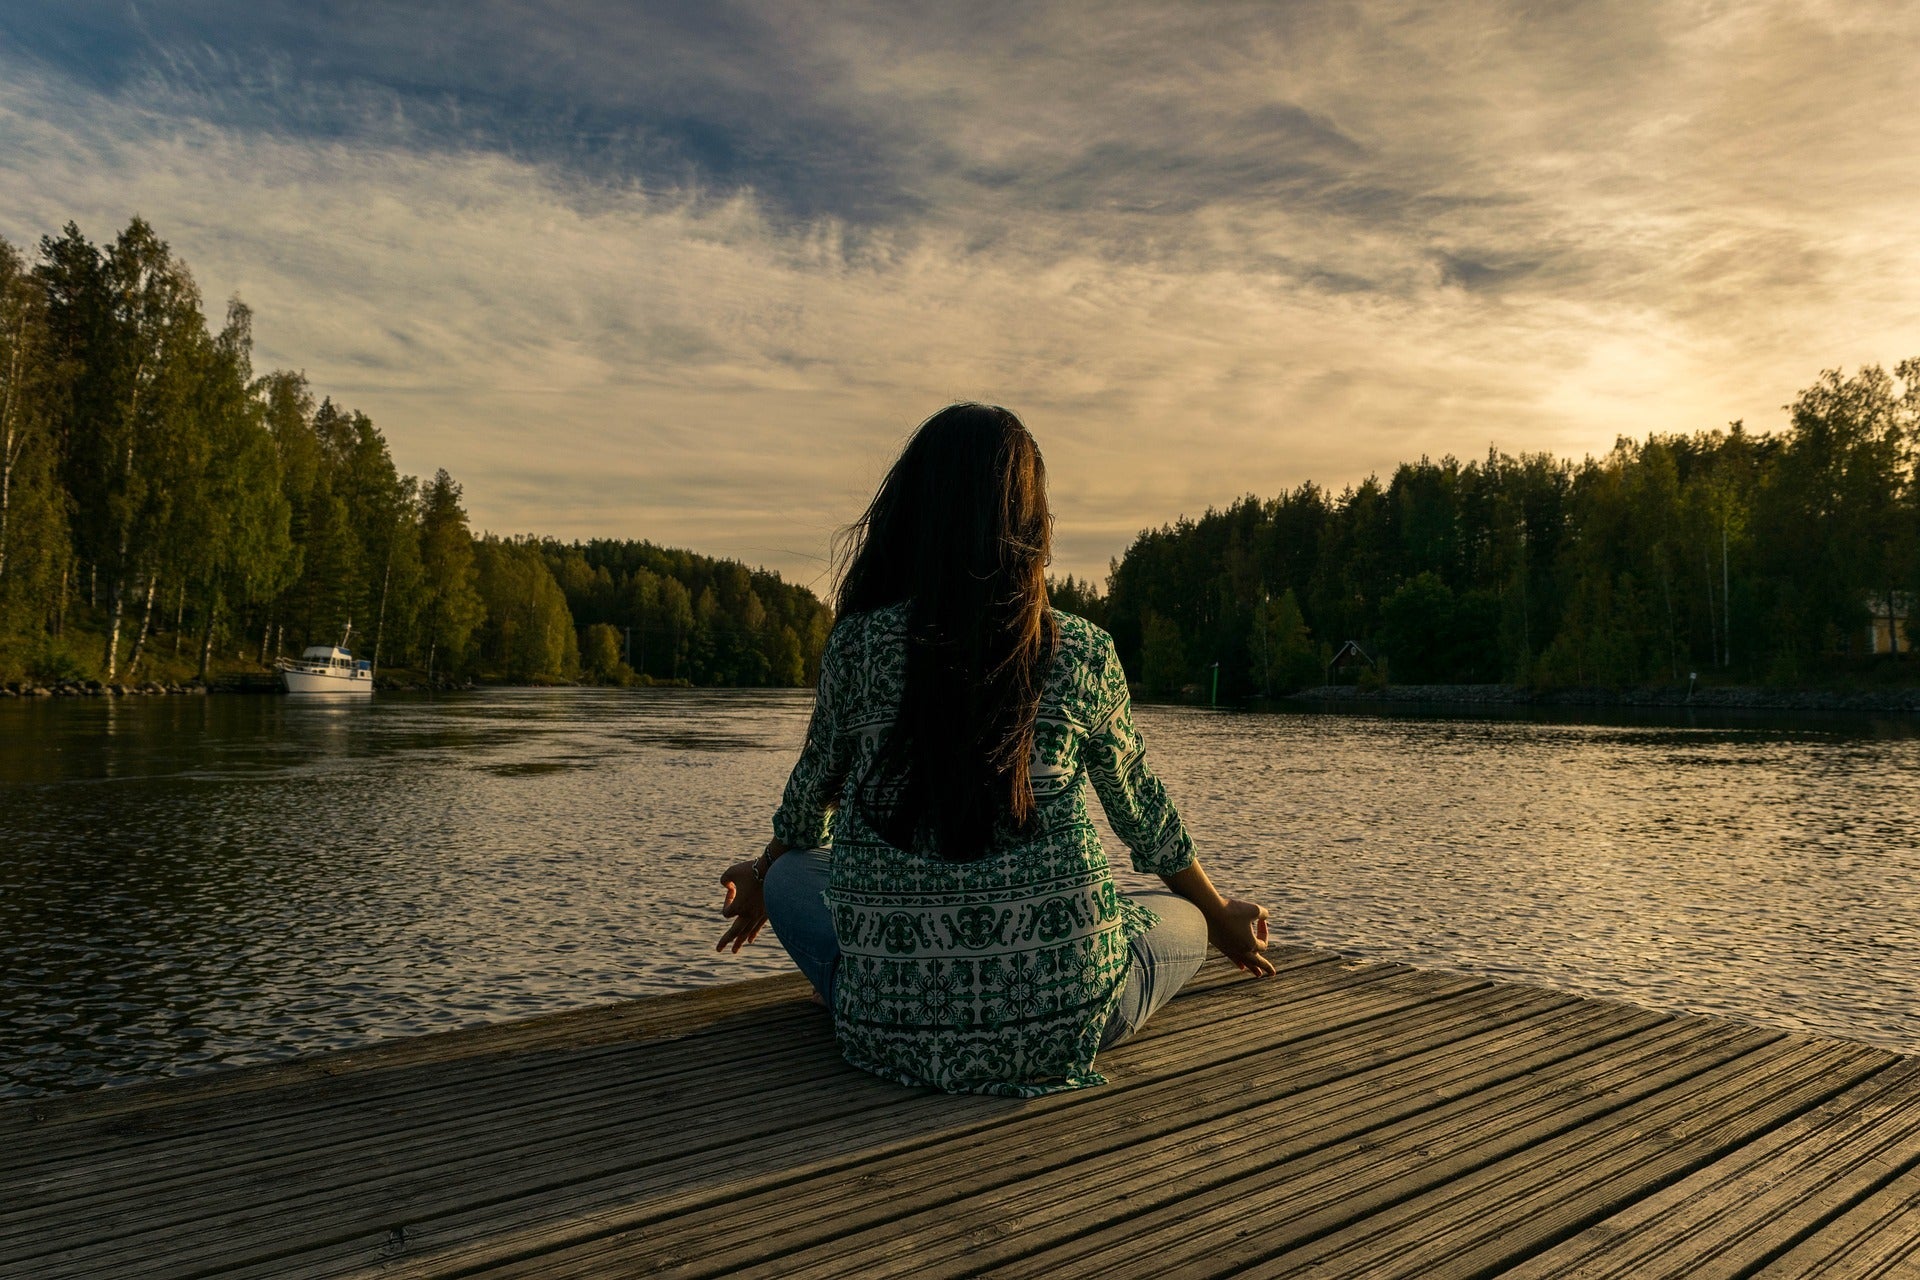 Consapevolezza e meditazione: <br>come vivere felici